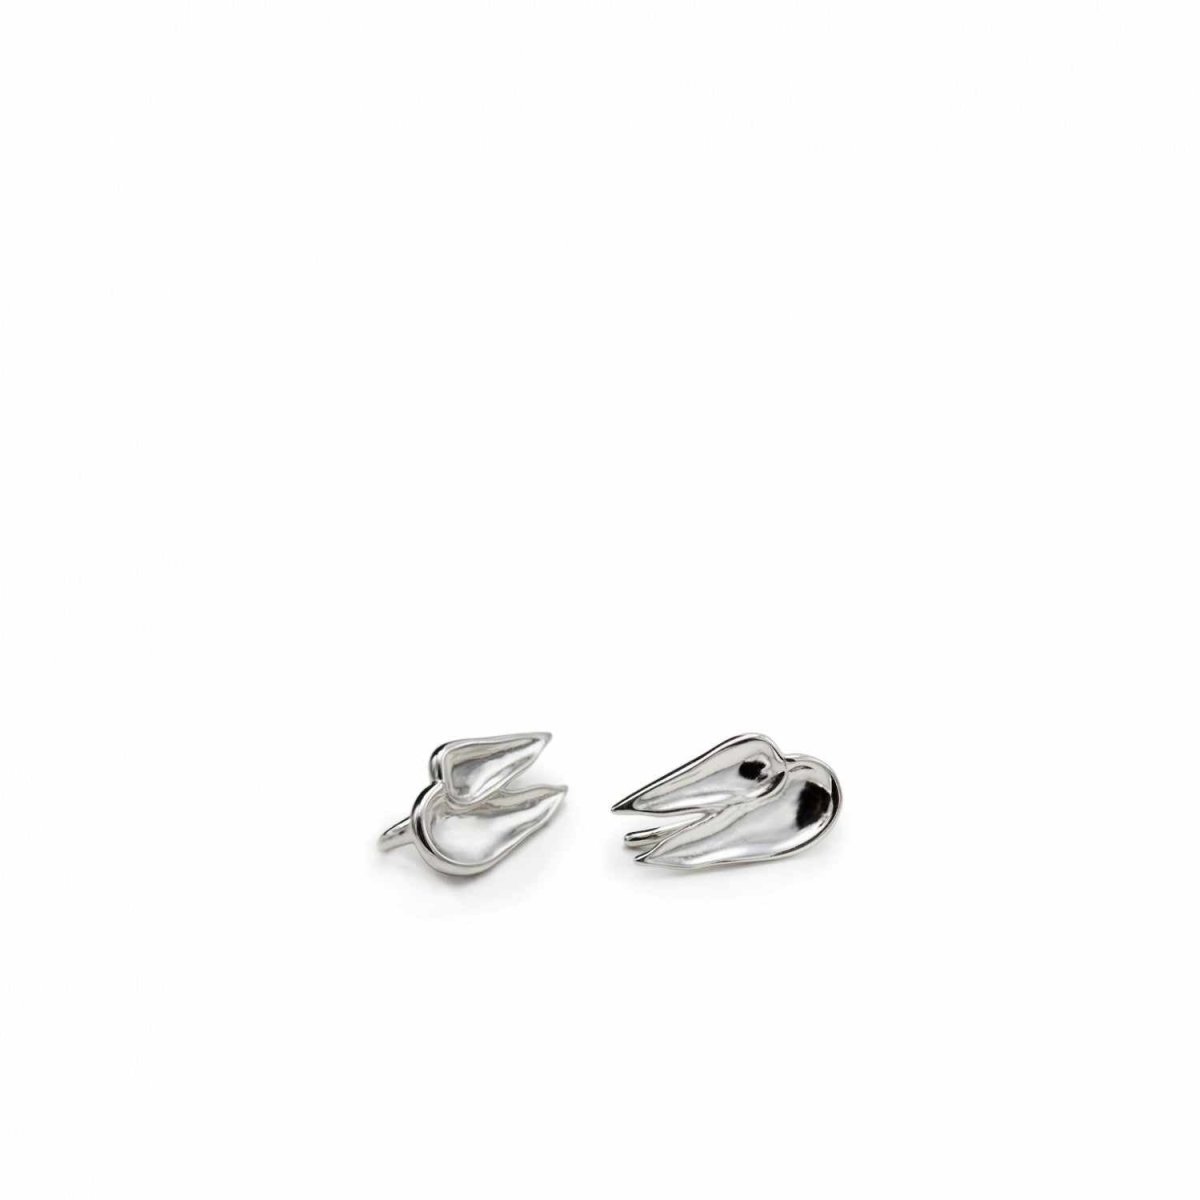 Earrings - Climbing earrings in silver brushstroke design